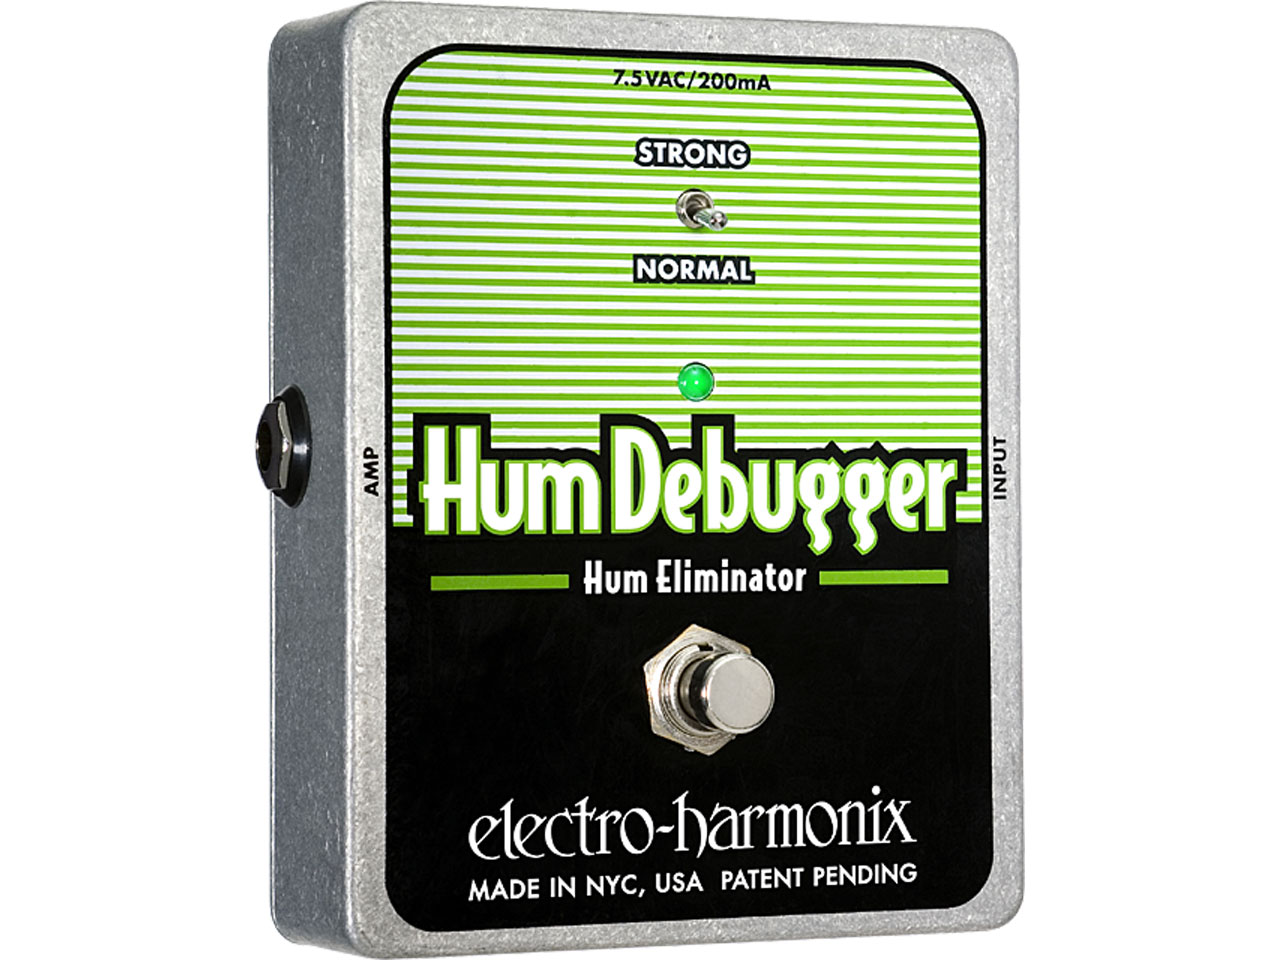 Electro-Harmonix(エレクトロハーモニックス) Hum Debugger Hum Eliminator (ノイズリダクション/ノイズゲート)